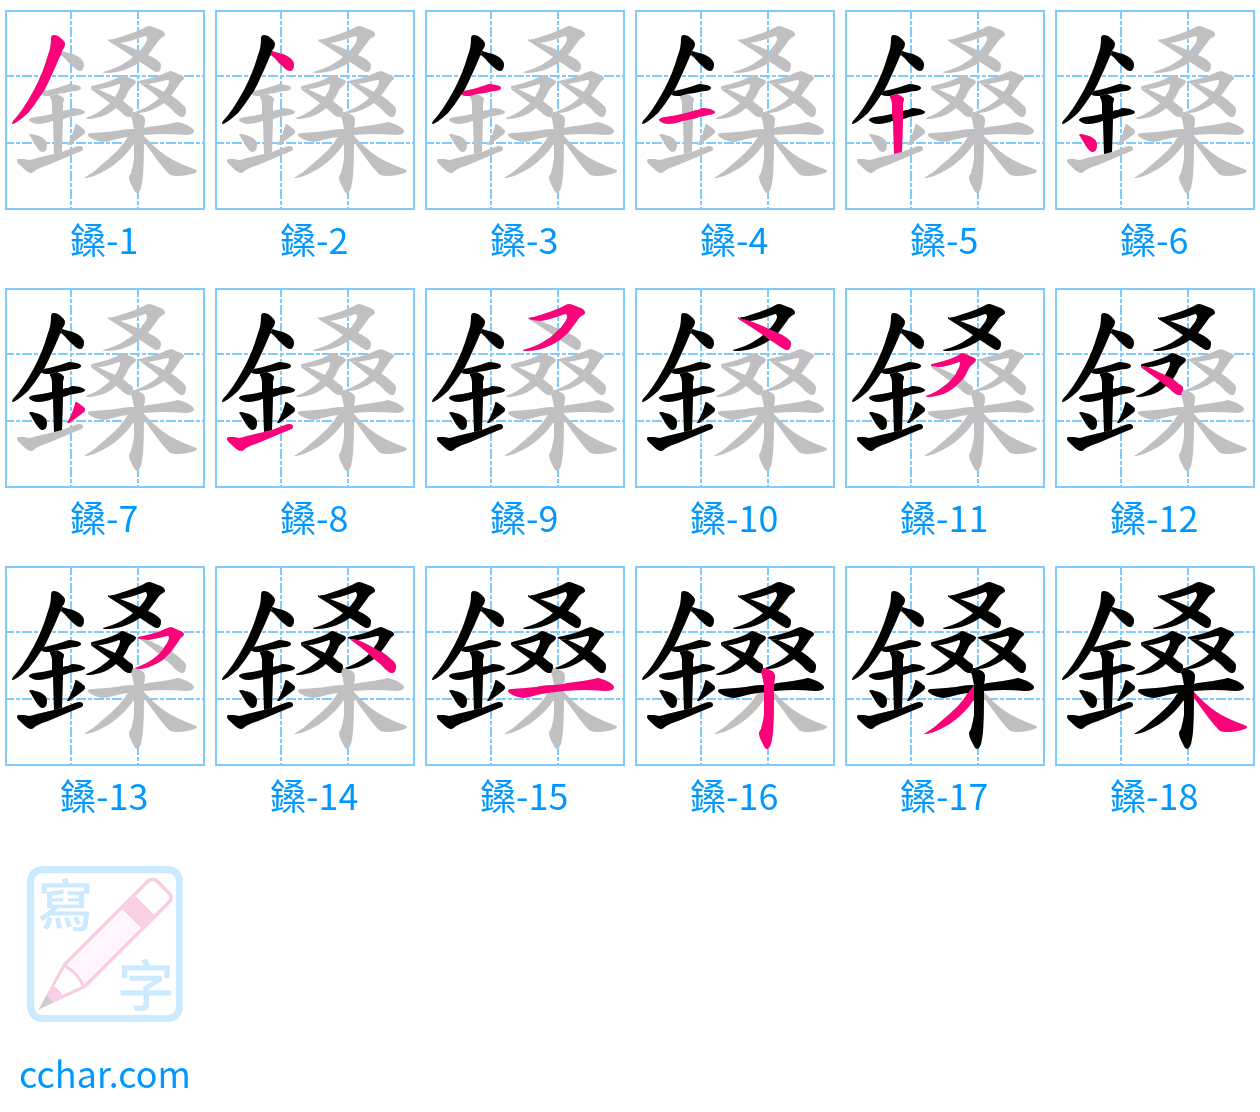 鎟 stroke order step-by-step diagram